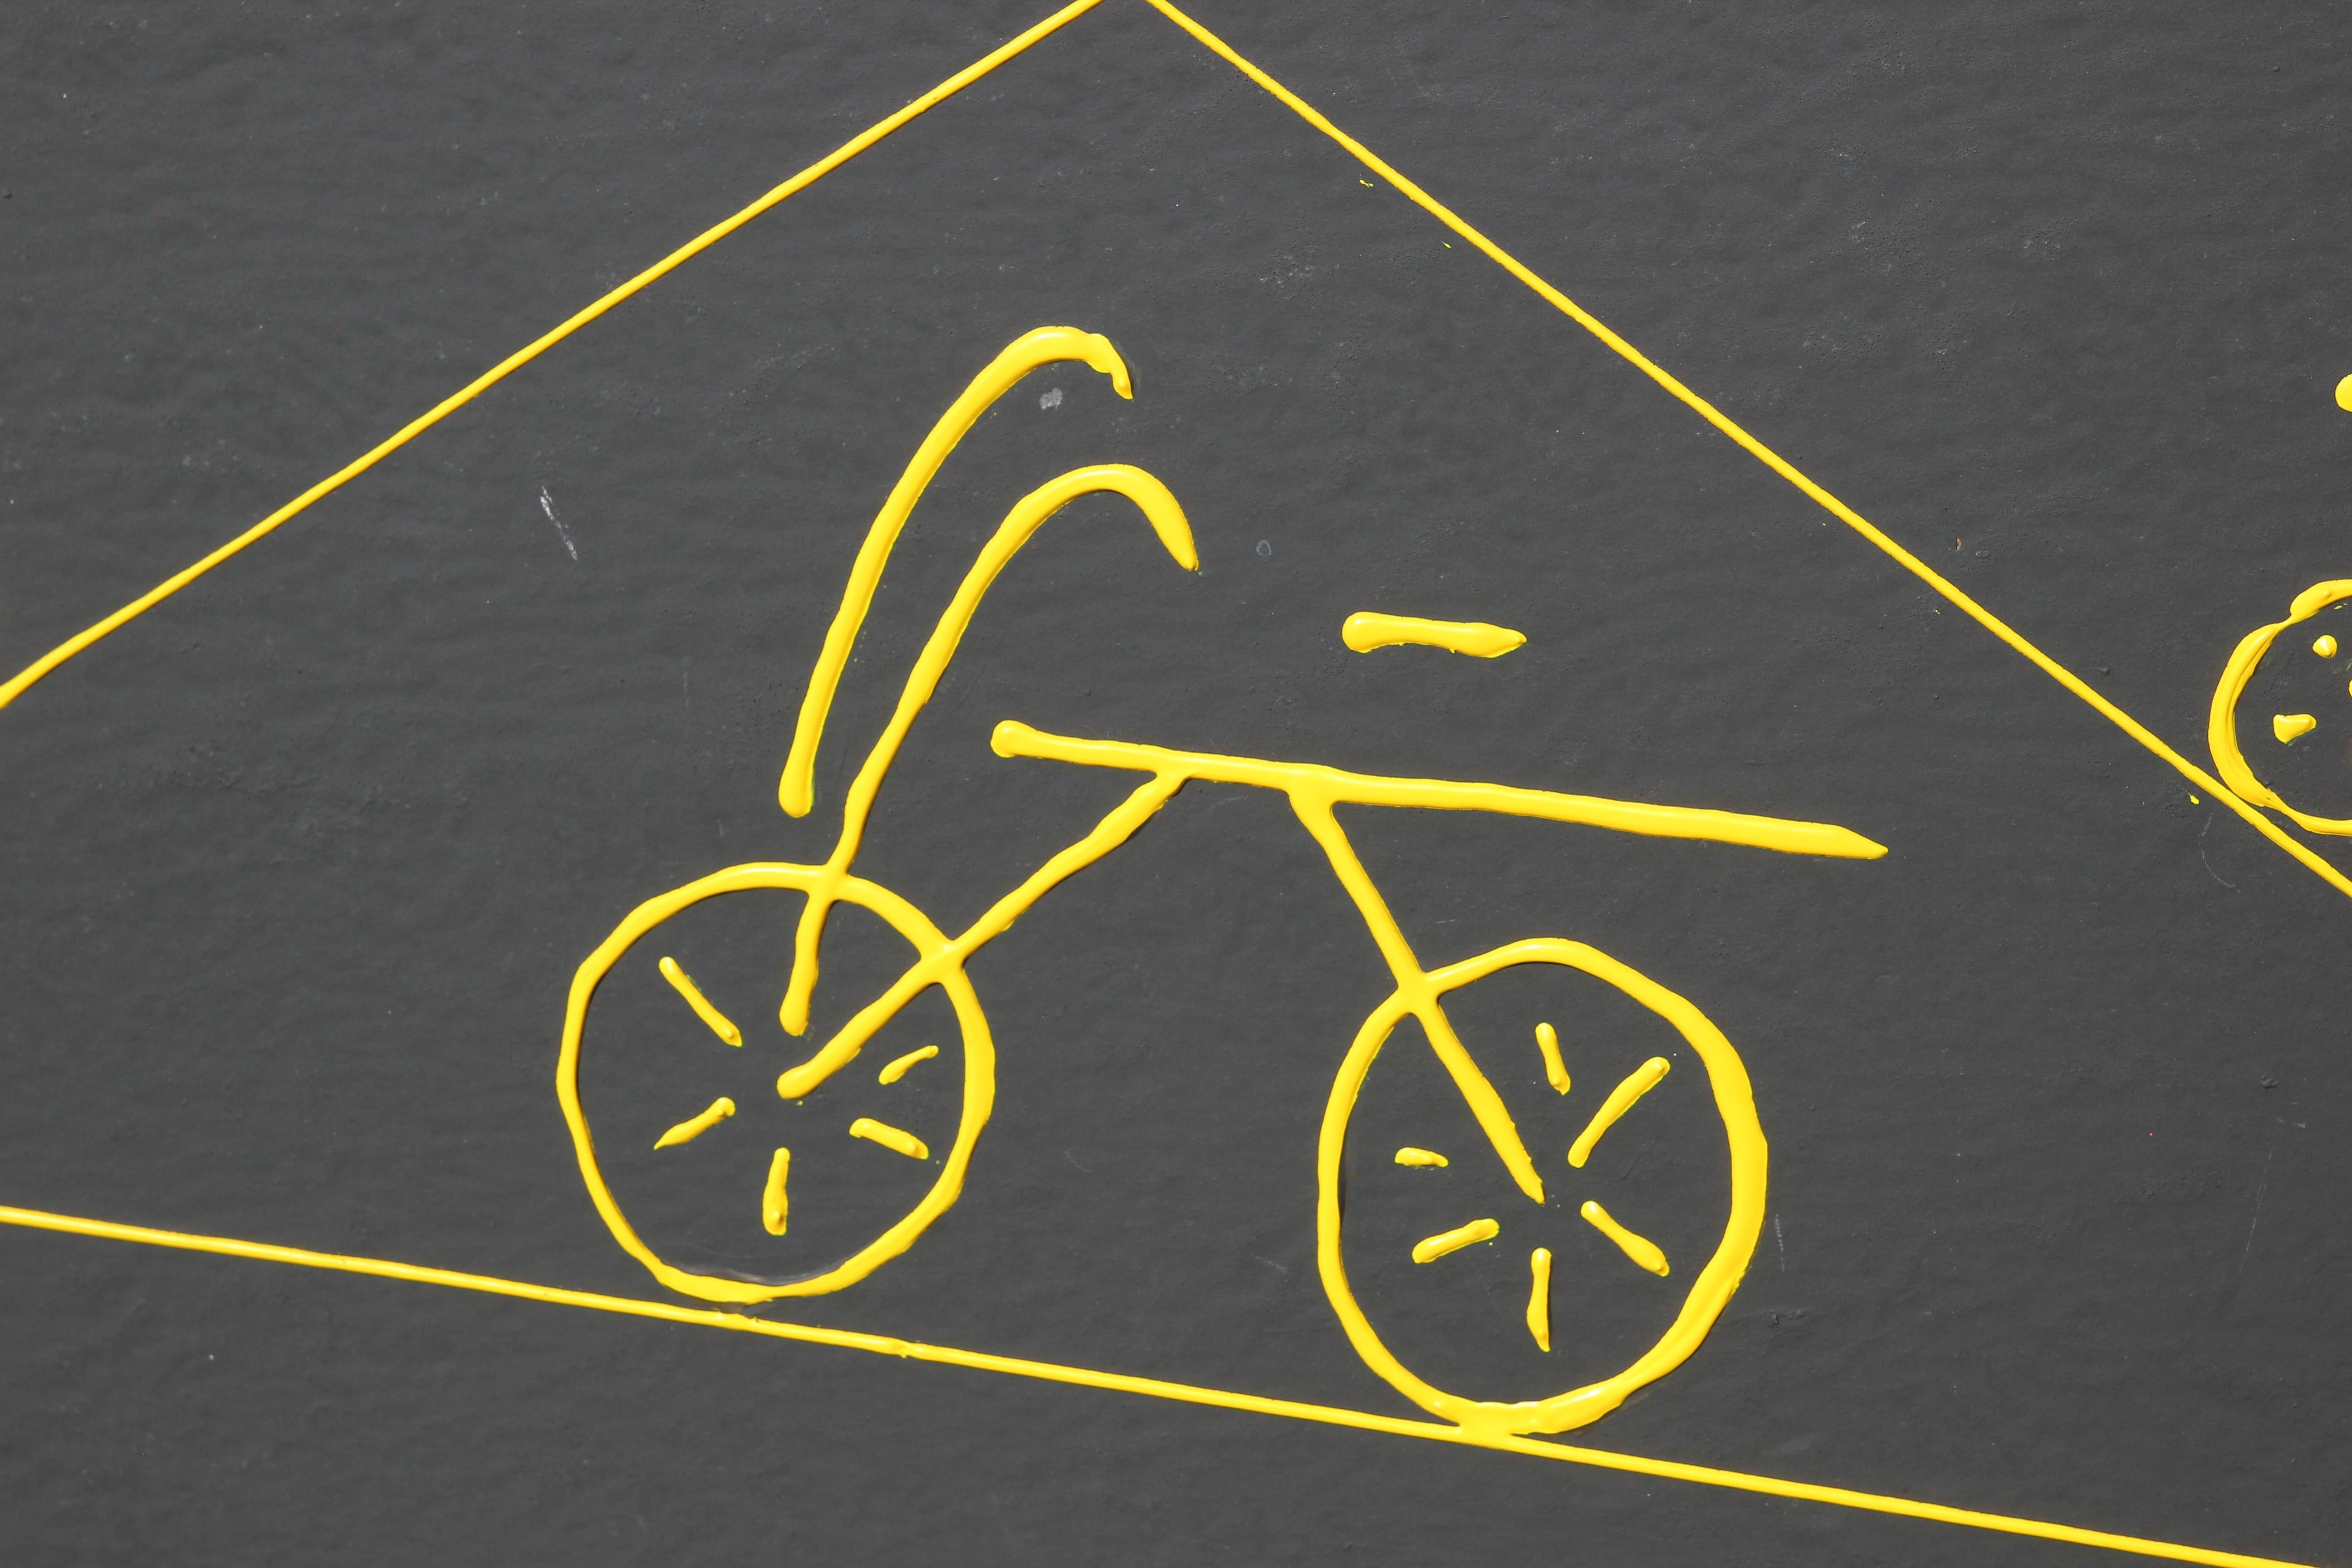 Große schwarze, gelbe und rote minimale abstrakte Malerei mit Fahrrädern. Das Werk ist vom Künstler, Francis d'Estaing, in der unteren Ecke signiert. Das Werk ist in einen Goldrahmen eingefasst.
Abmessungen ohne Rahmen: H 31 in x W 47 in.